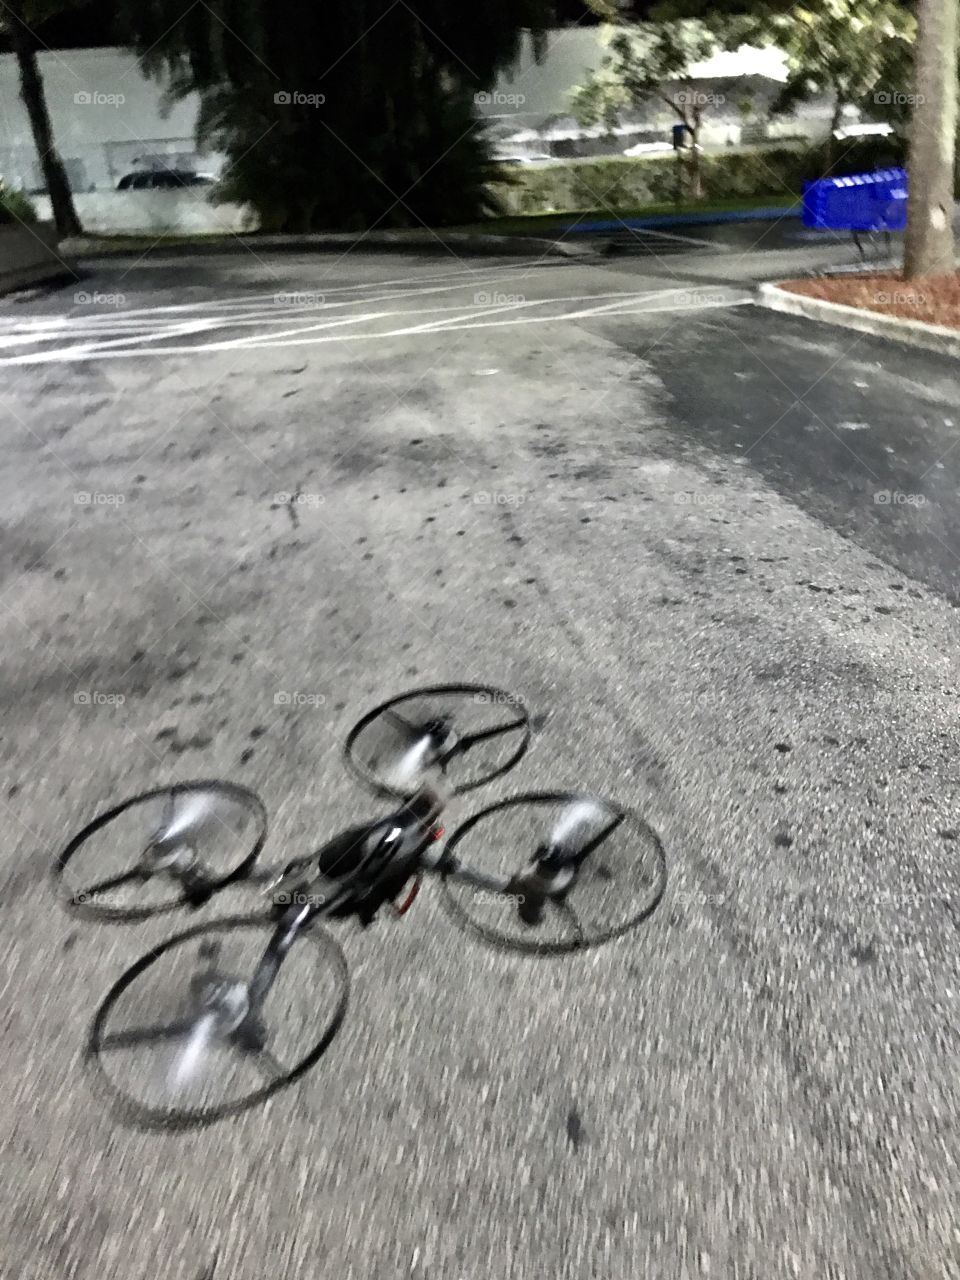 Drone fun